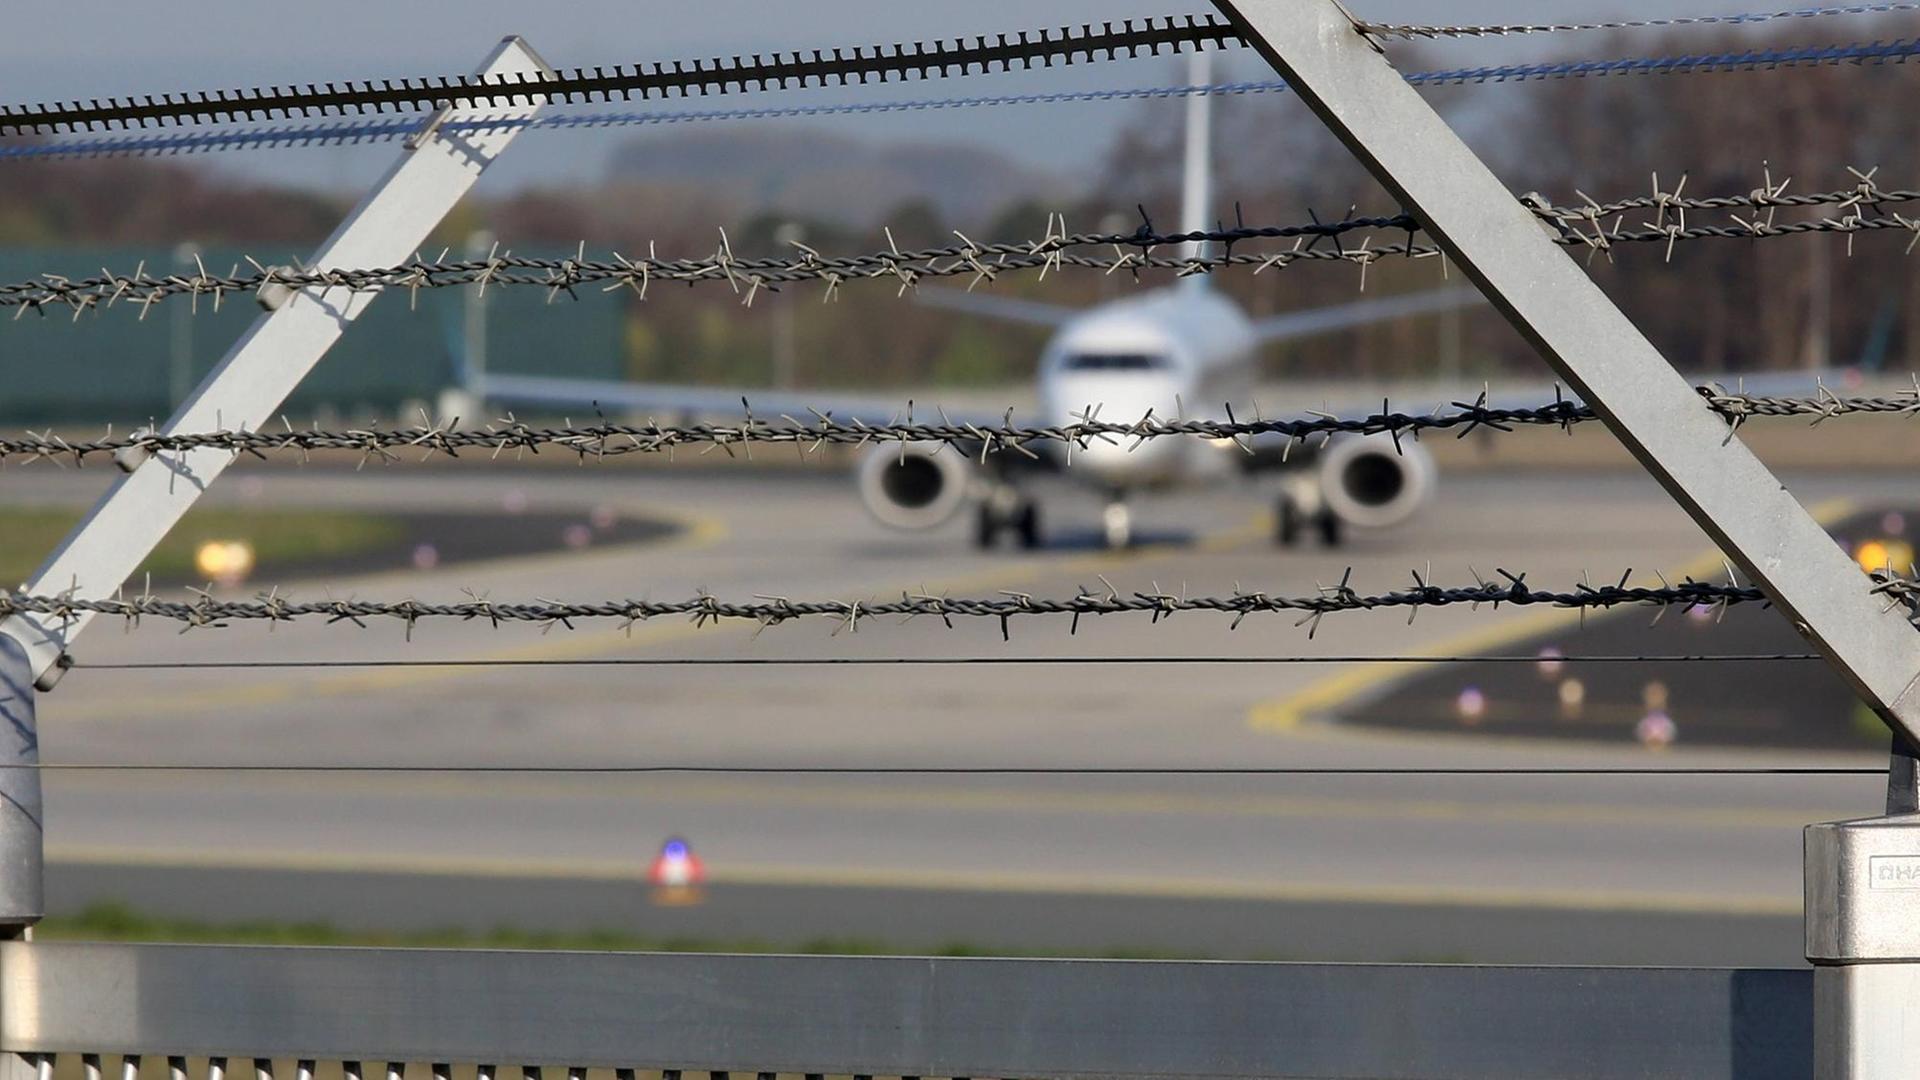 Symbolfoto zum Thema Abschiebung: Im Vordergrund ist ein Zaun mit Sacheldraht zu sehen, im Hintergrund ein Flugzeug auf dem Flughafen Frankfurt am Main.